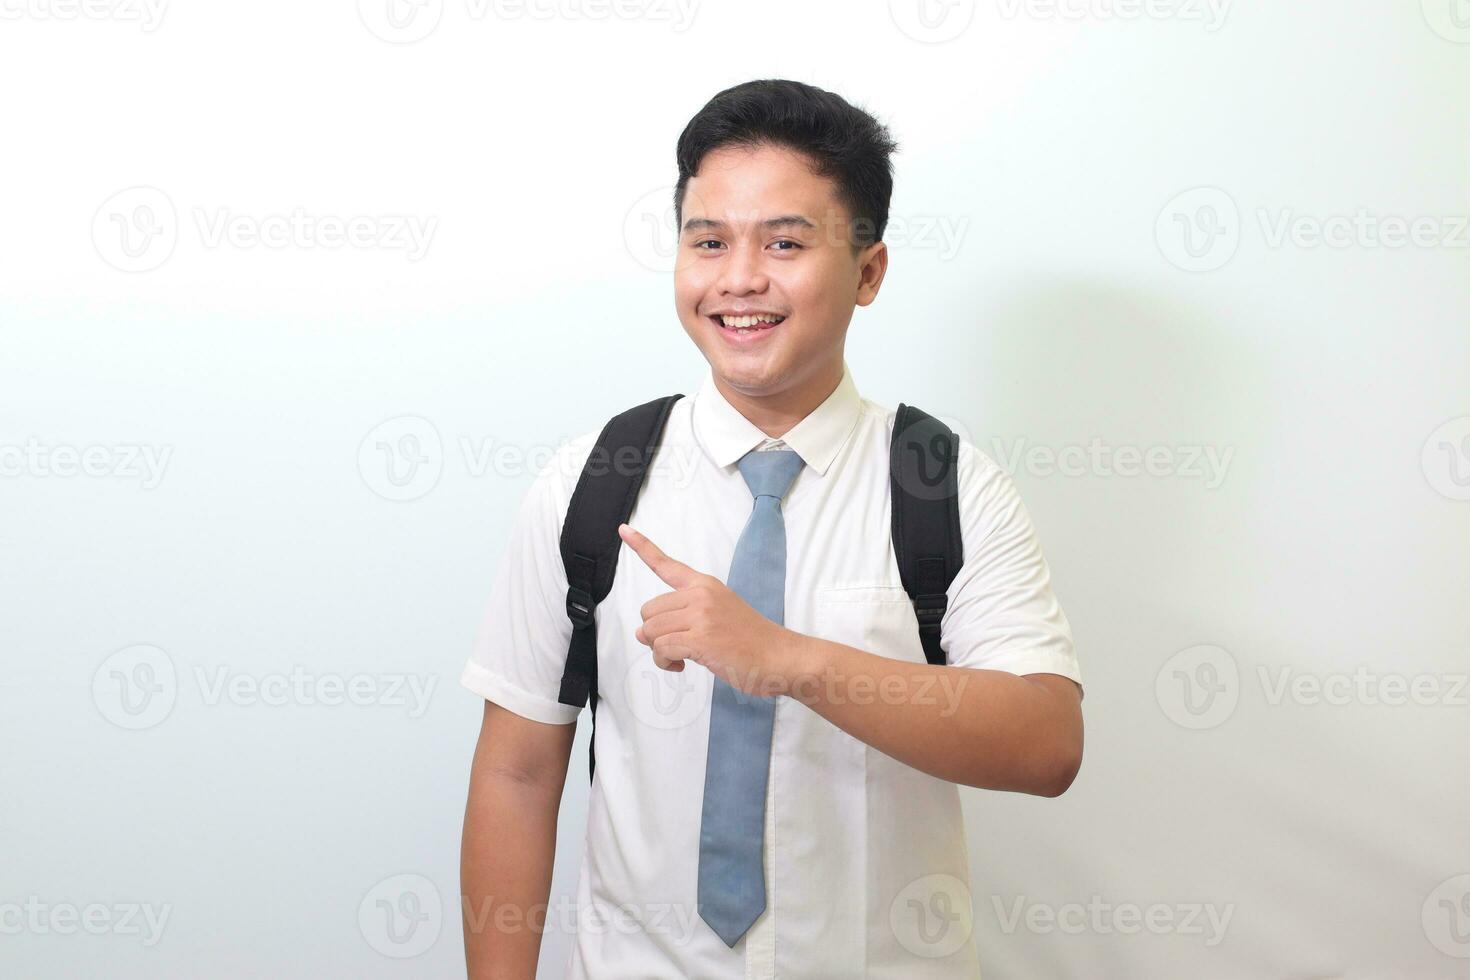 indonesiska senior hög skola studerande bär vit skjorta enhetlig med grå slips som visar produkt, pekande på något och leende. isolerat bild på vit bakgrund foto